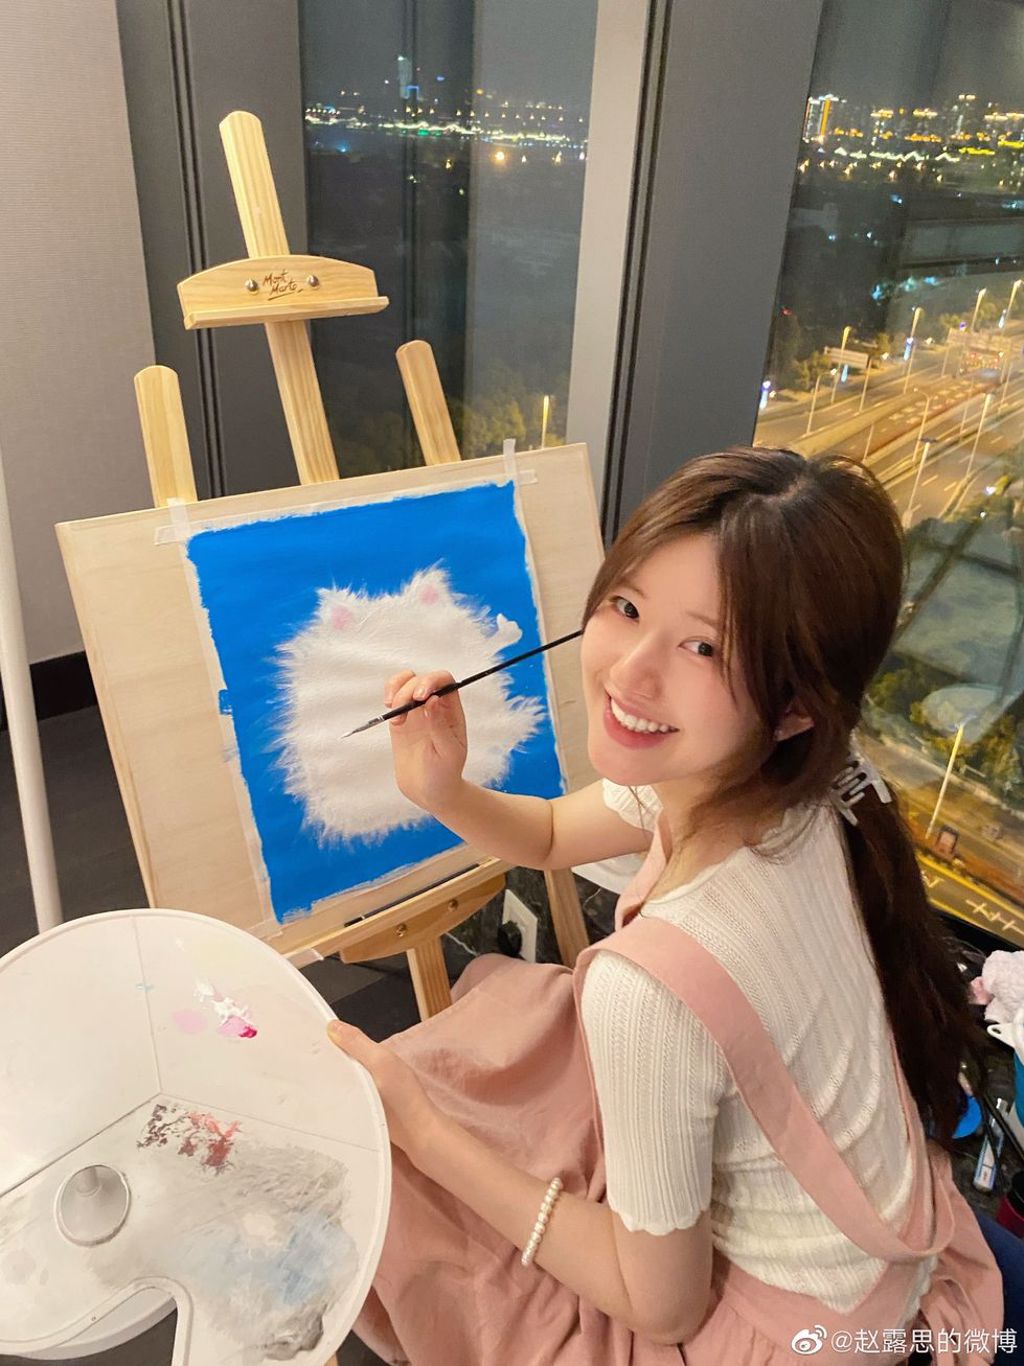 趙露經常在自己的微博上分享自己畫的油畫。(圖/翻攝自微博@趙露思)

